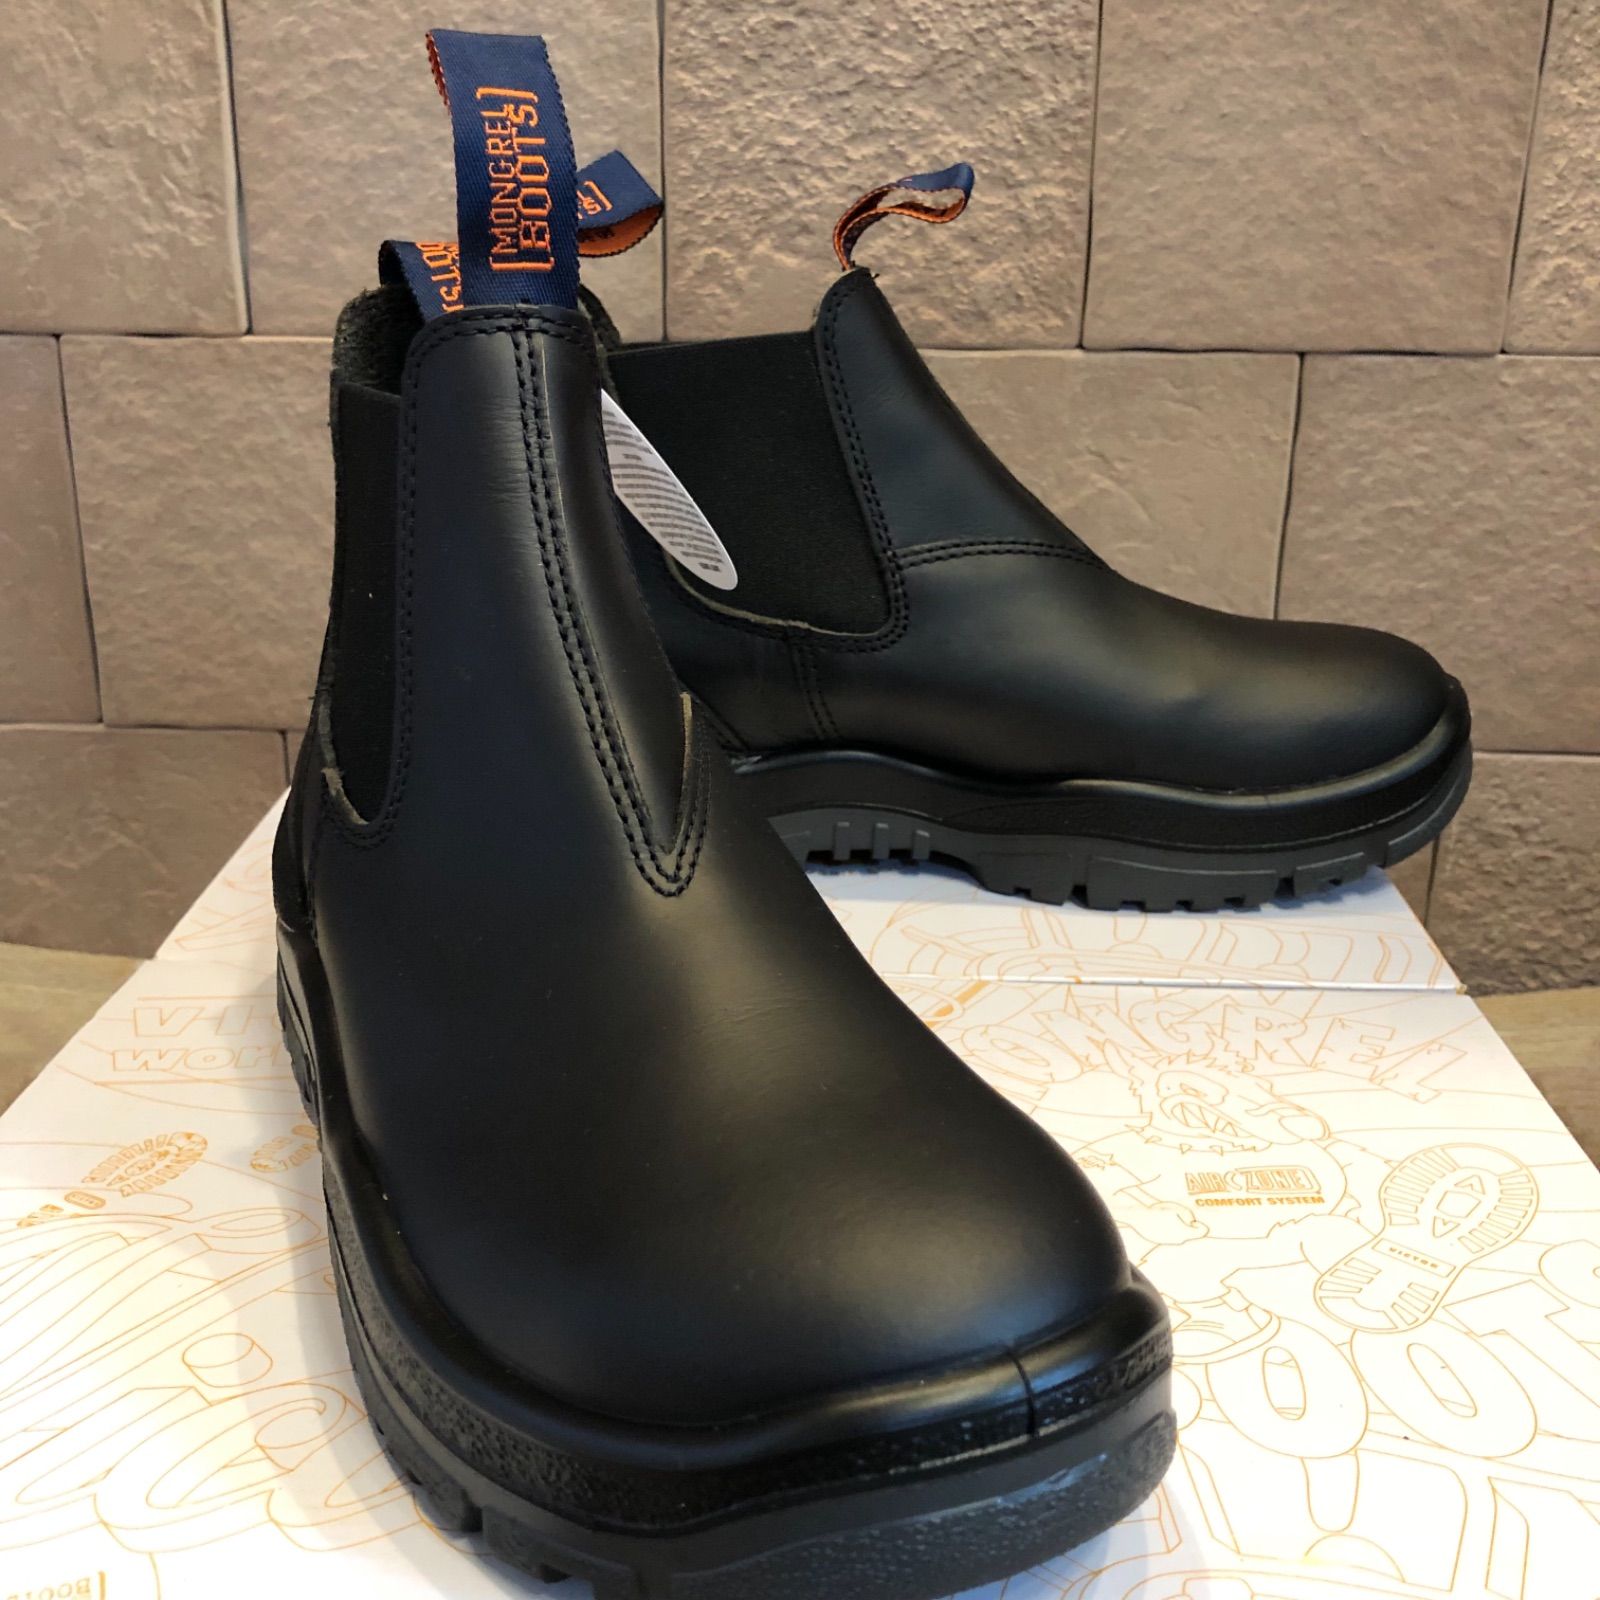 モングレルブーツ新品 オーストラリア発 MONGREL BOOTS 安全靴 サイドゴアブーツ